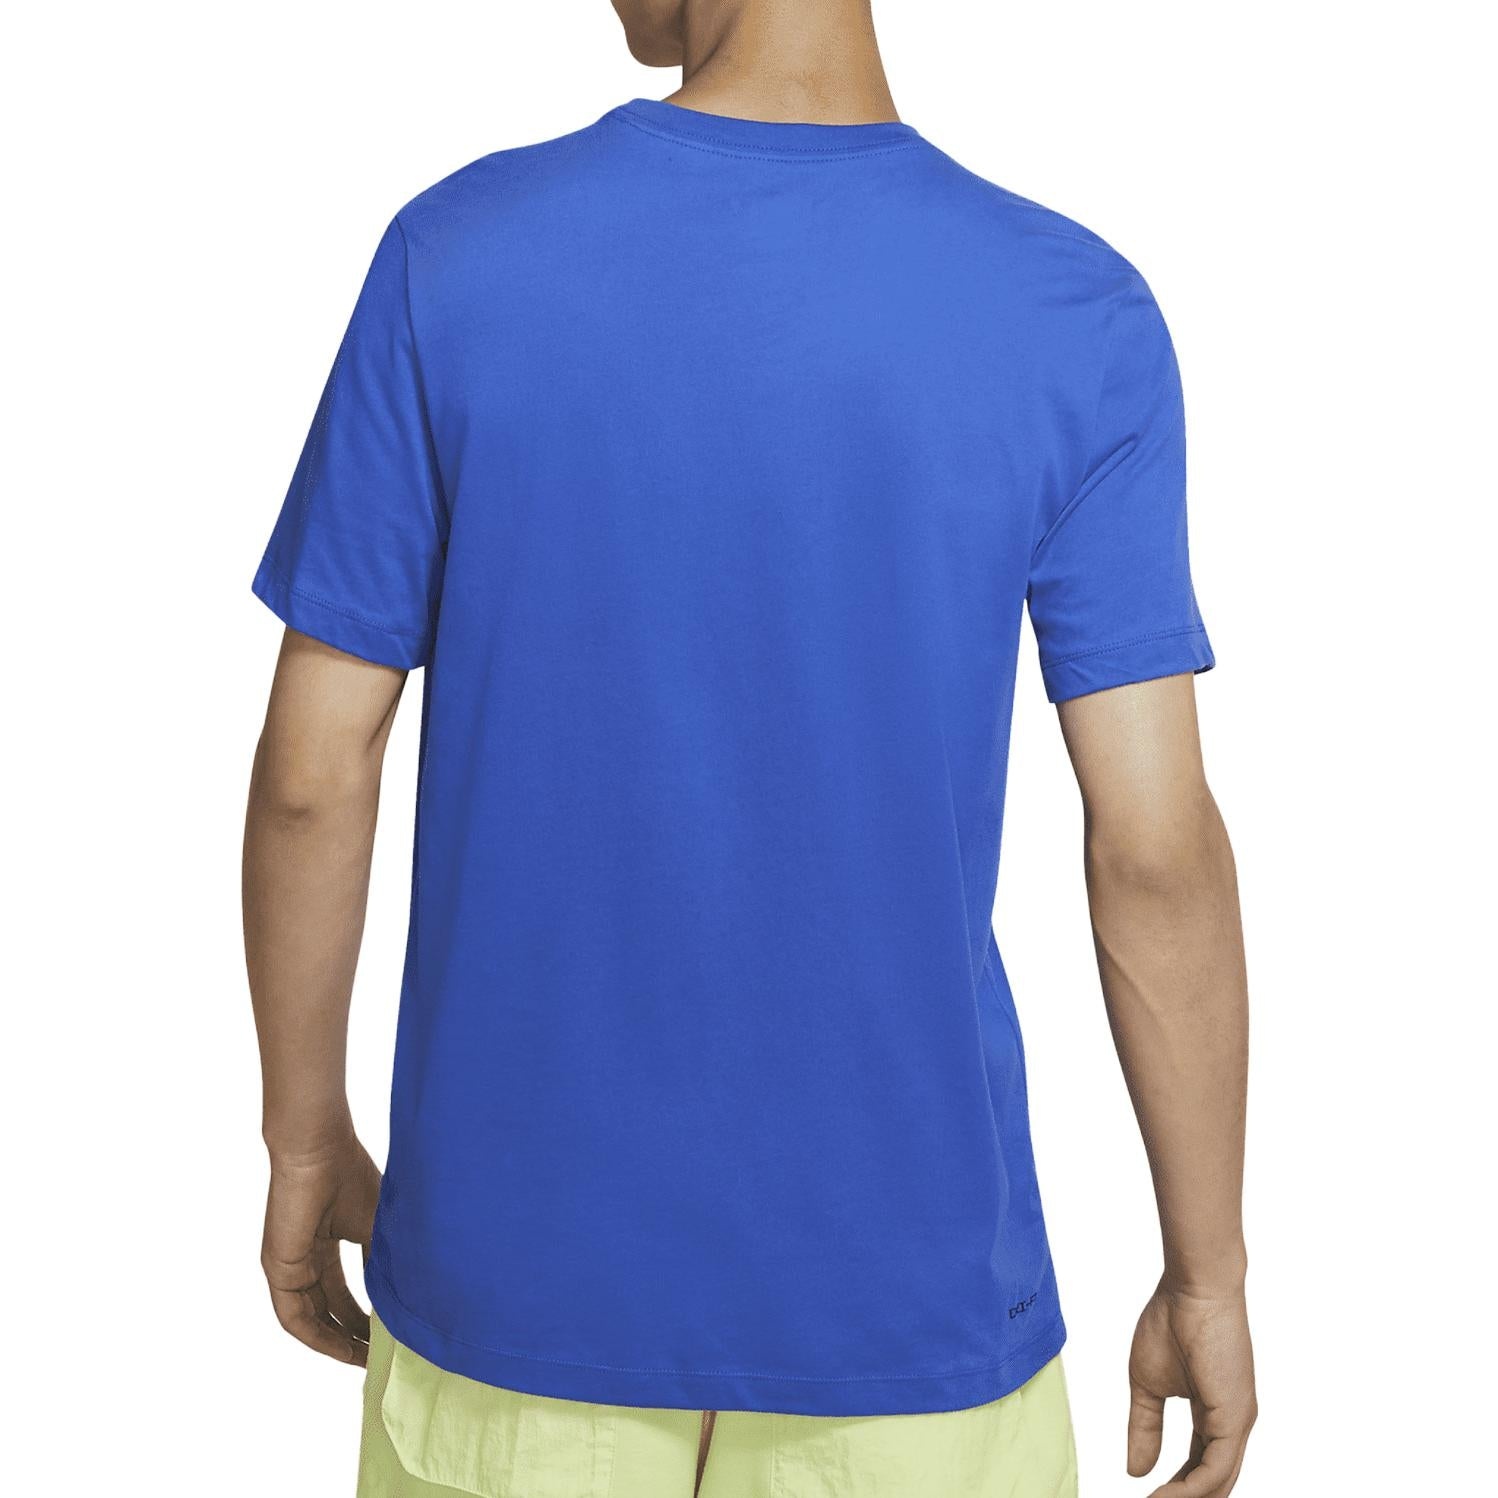 Air Jordan Jumpman Logo T-shirt 'Blue' CW5191-480 - 2